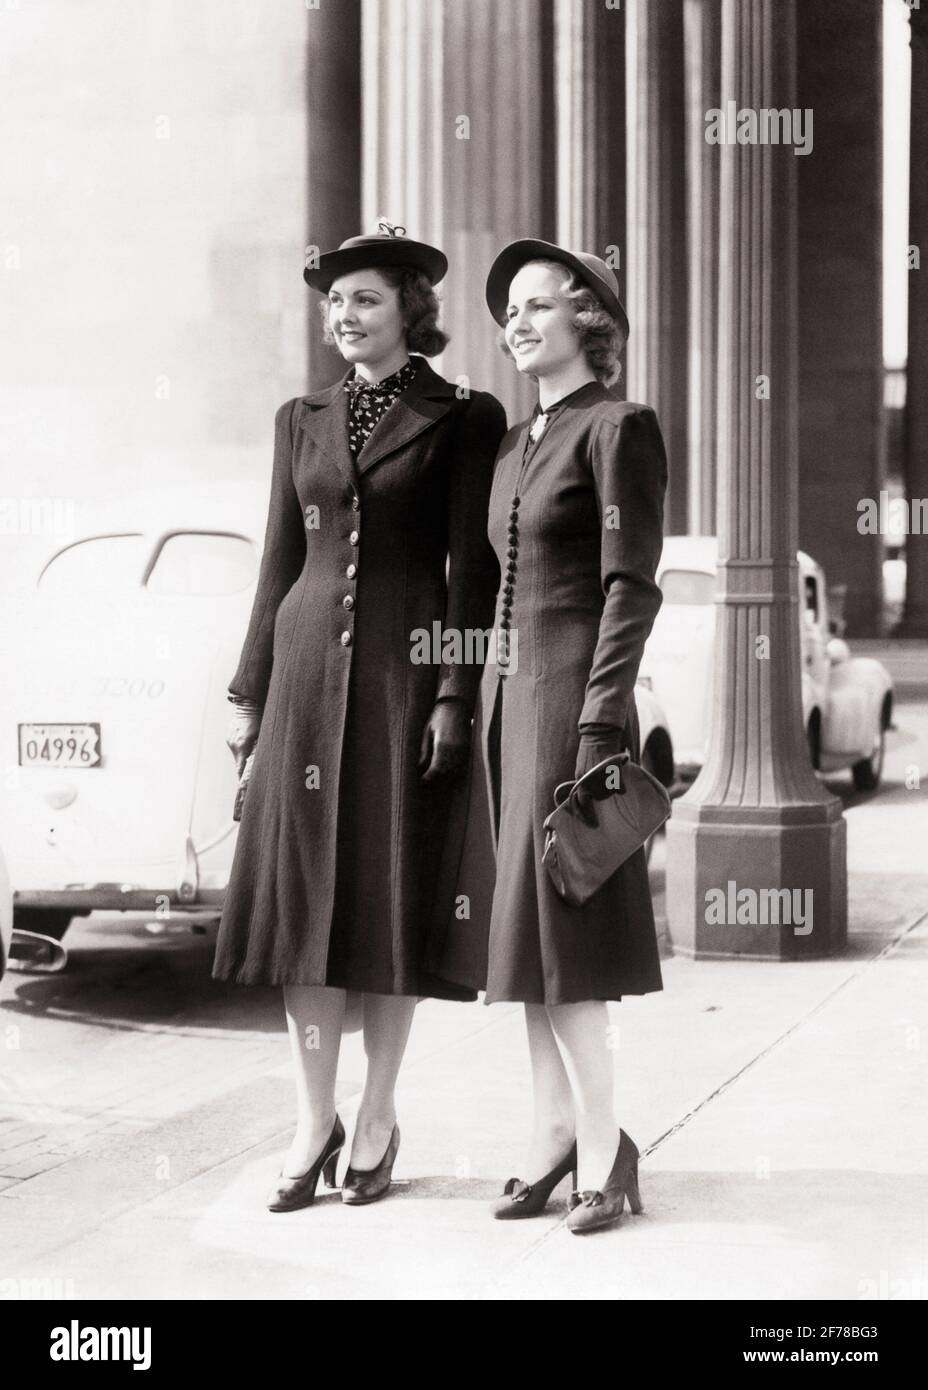 1940s Utility Clothing